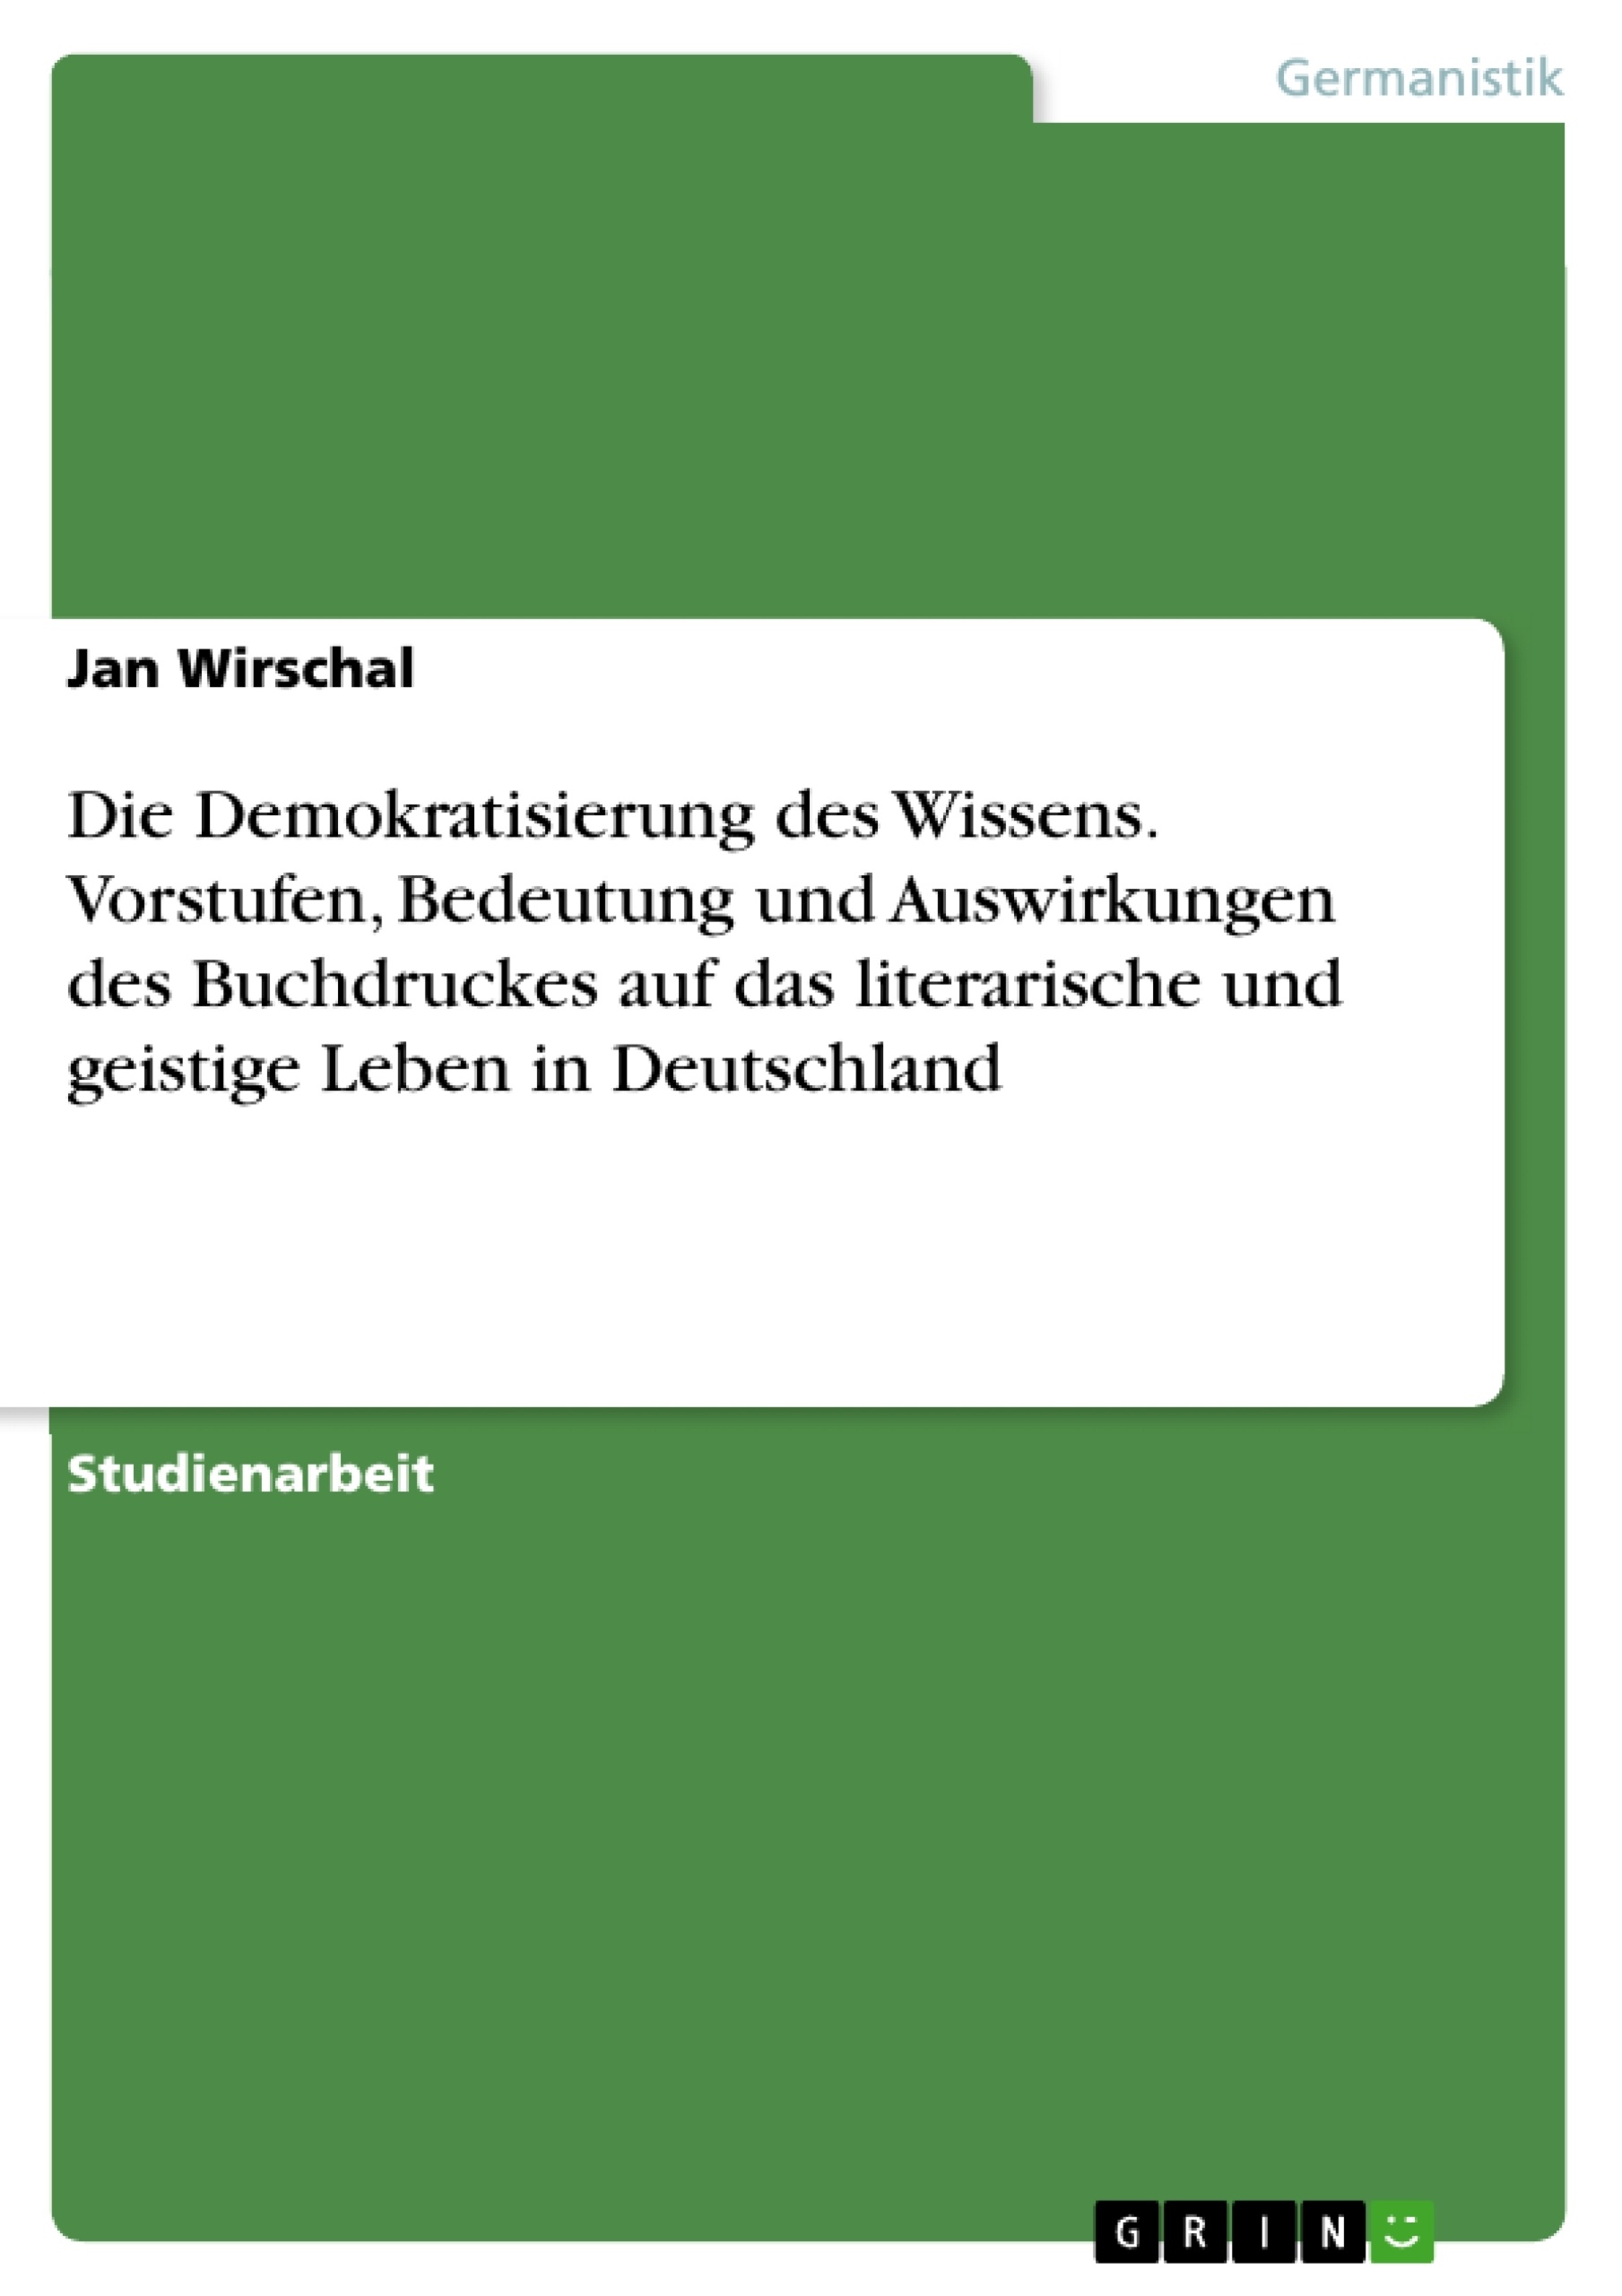 Titre: Die Demokratisierung des Wissens. Vorstufen, Bedeutung und Auswirkungen des Buchdruckes auf das literarische und geistige Leben in Deutschland